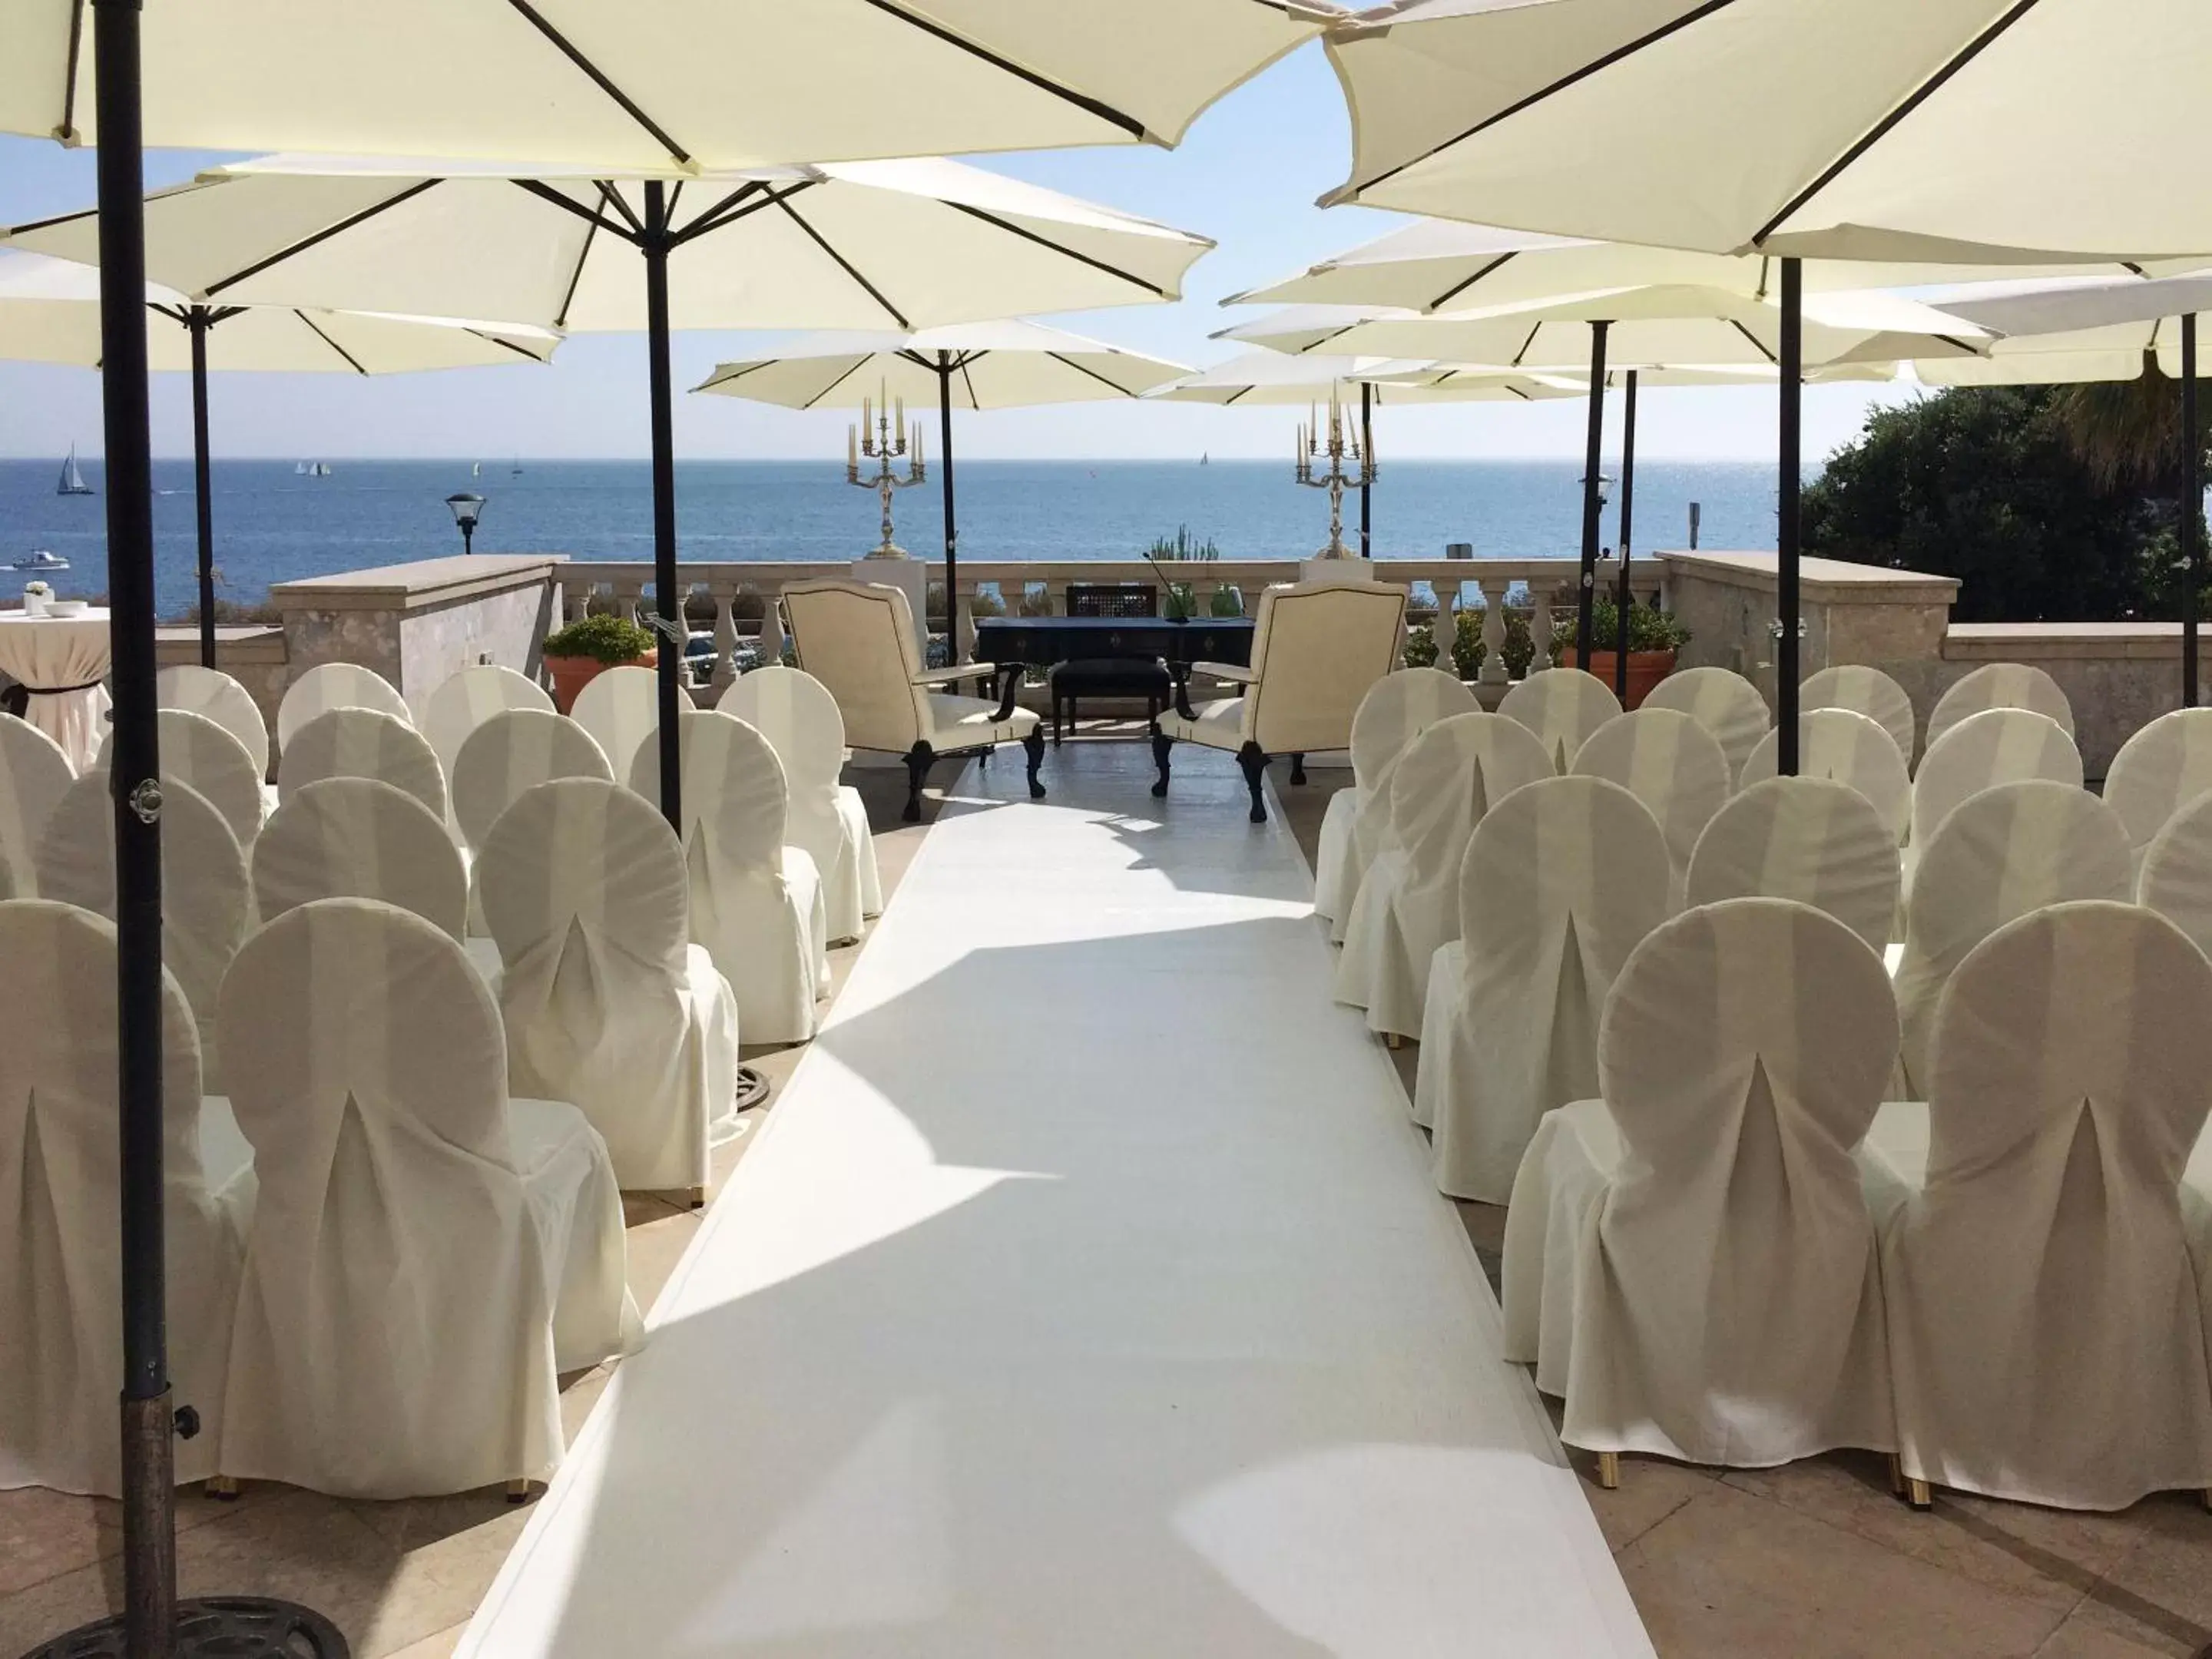 Banquet/Function facilities, Banquet Facilities in Grande Real Villa Itália Hotel & Spa